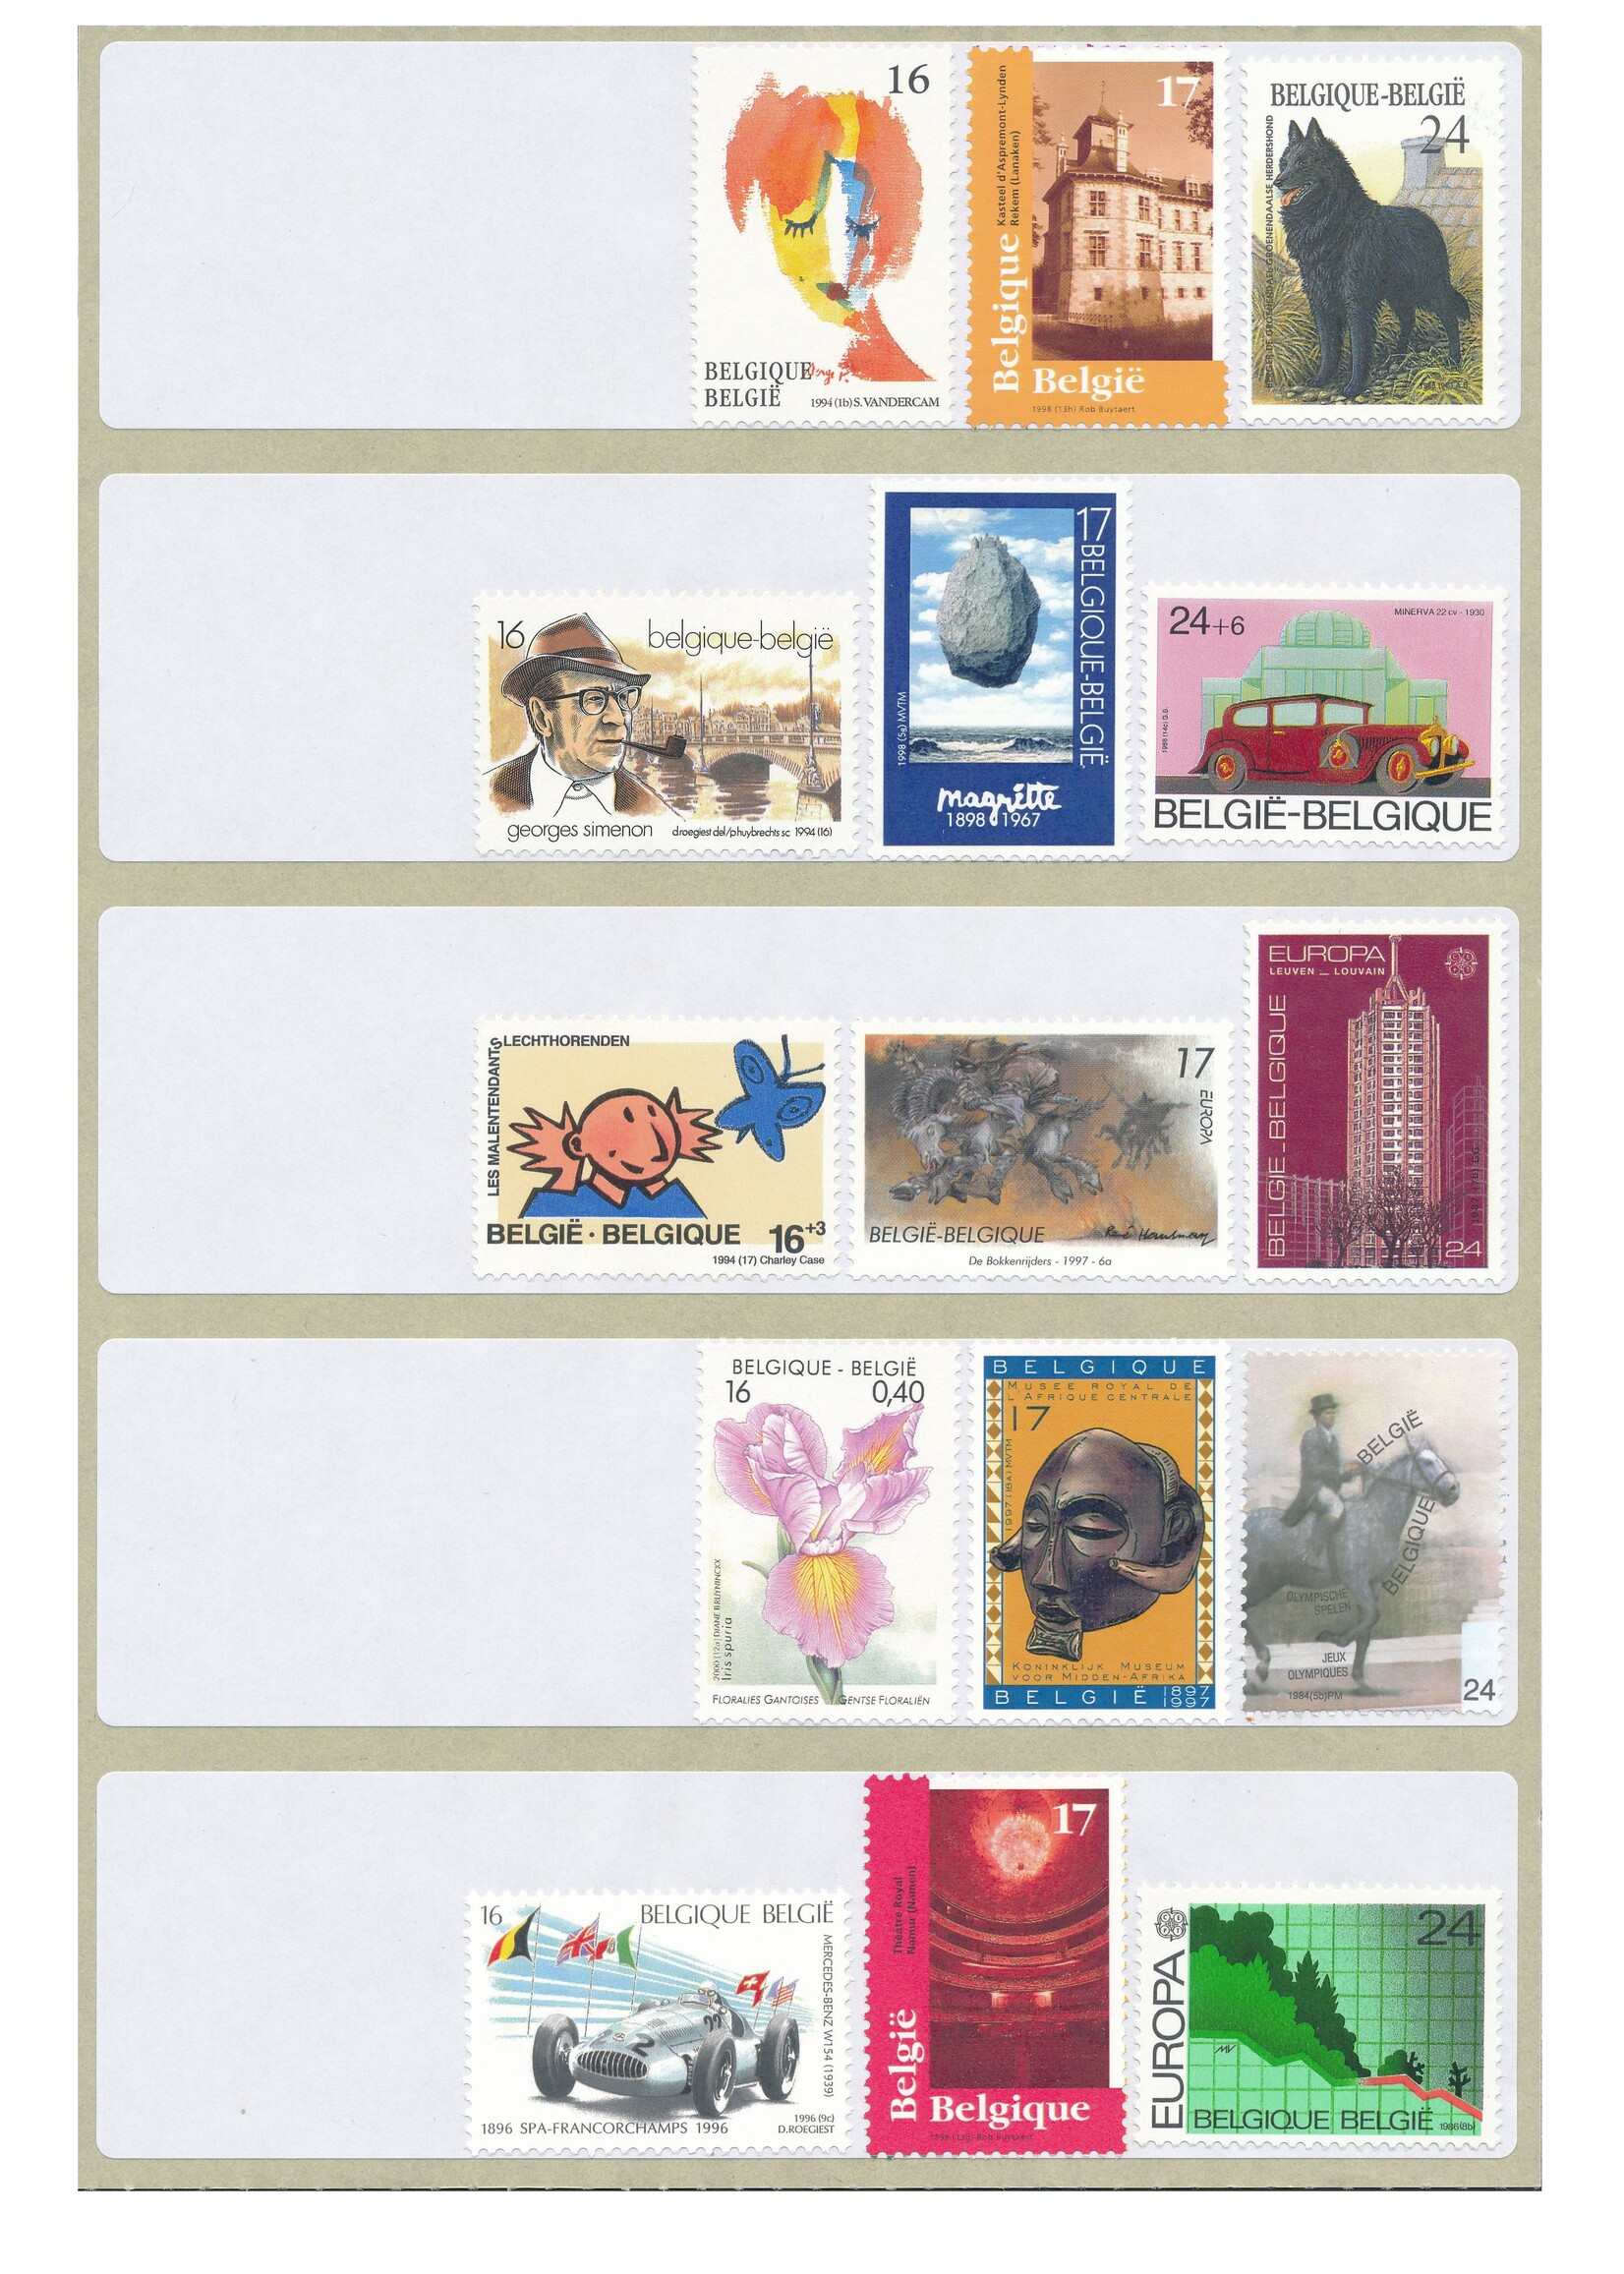 Postal labels (per 10) - Rate 1, Belgium